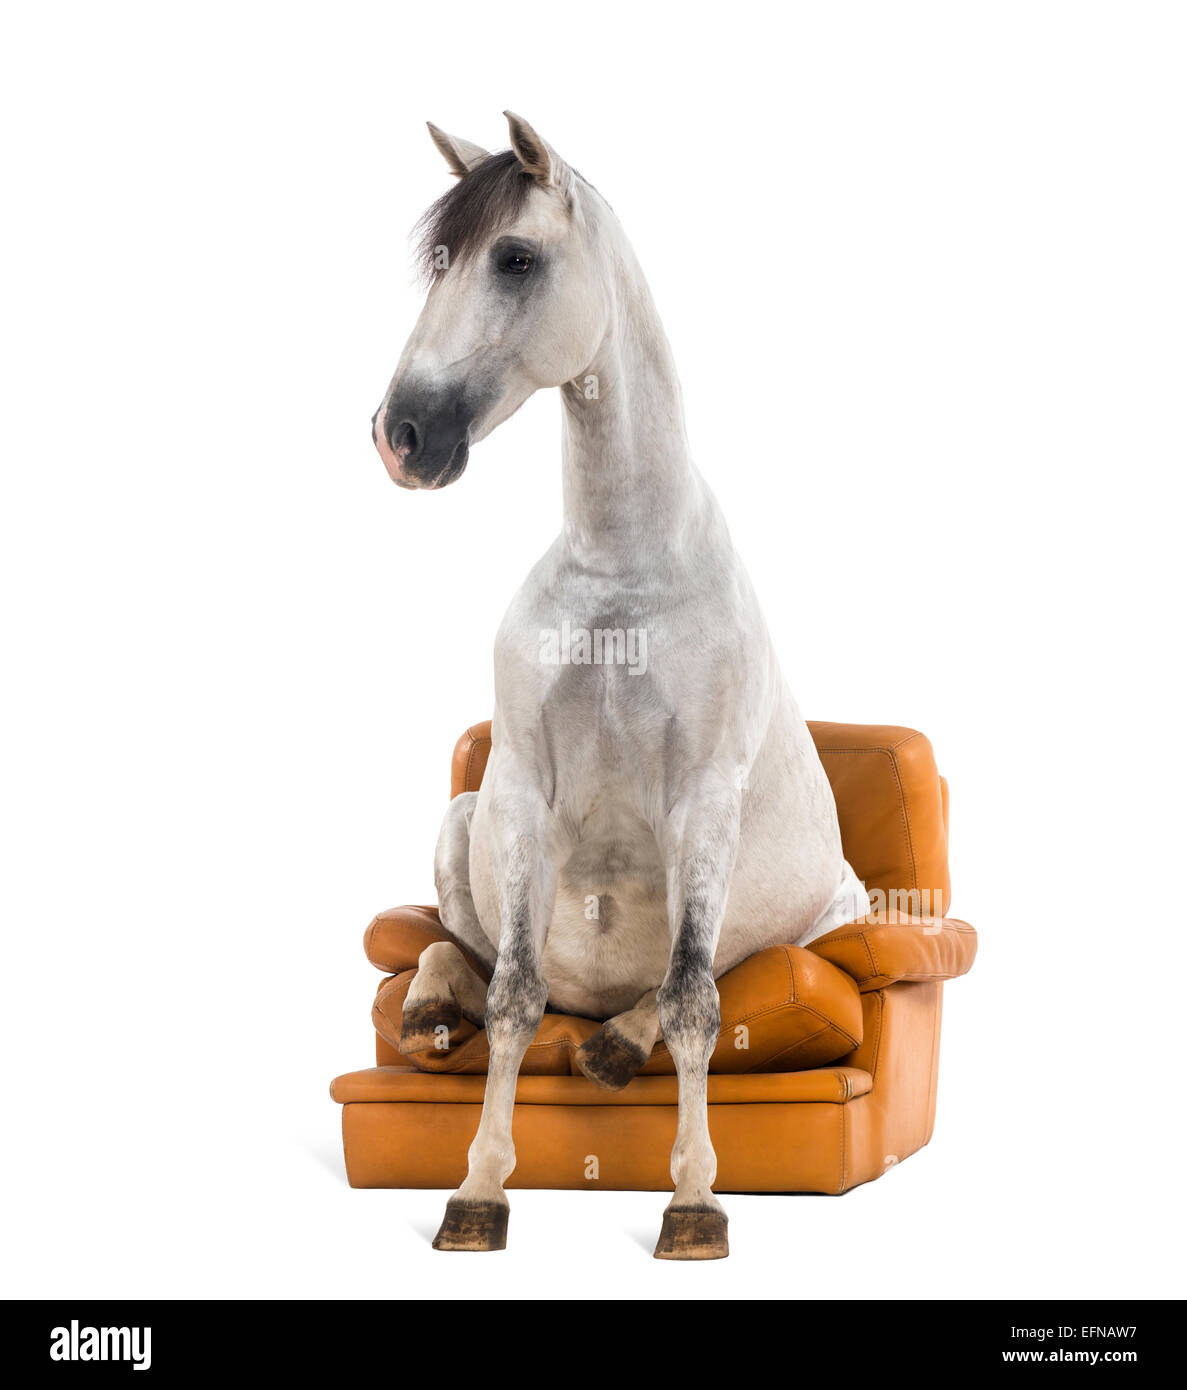 Лошадка сидит. Сидячая лошадь. Лошадь сидит. Конь сидит.